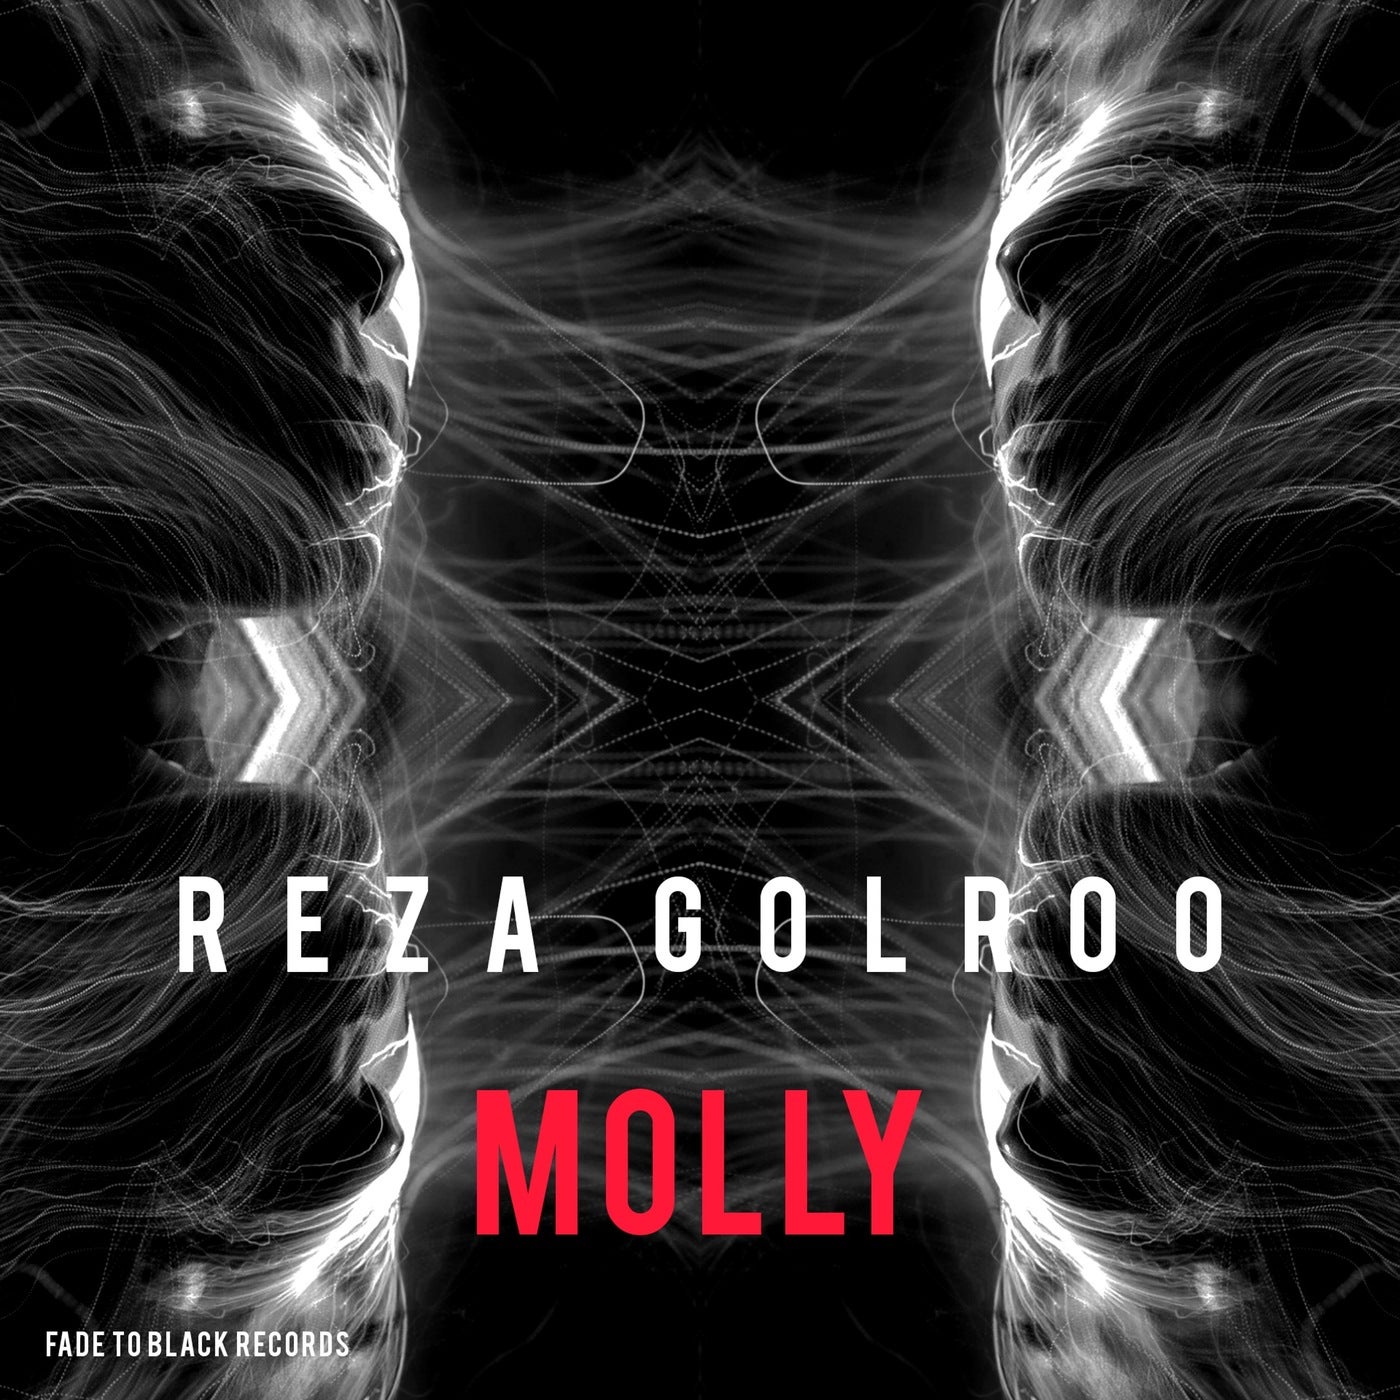 Reza Golroo - Molly [FTB009]